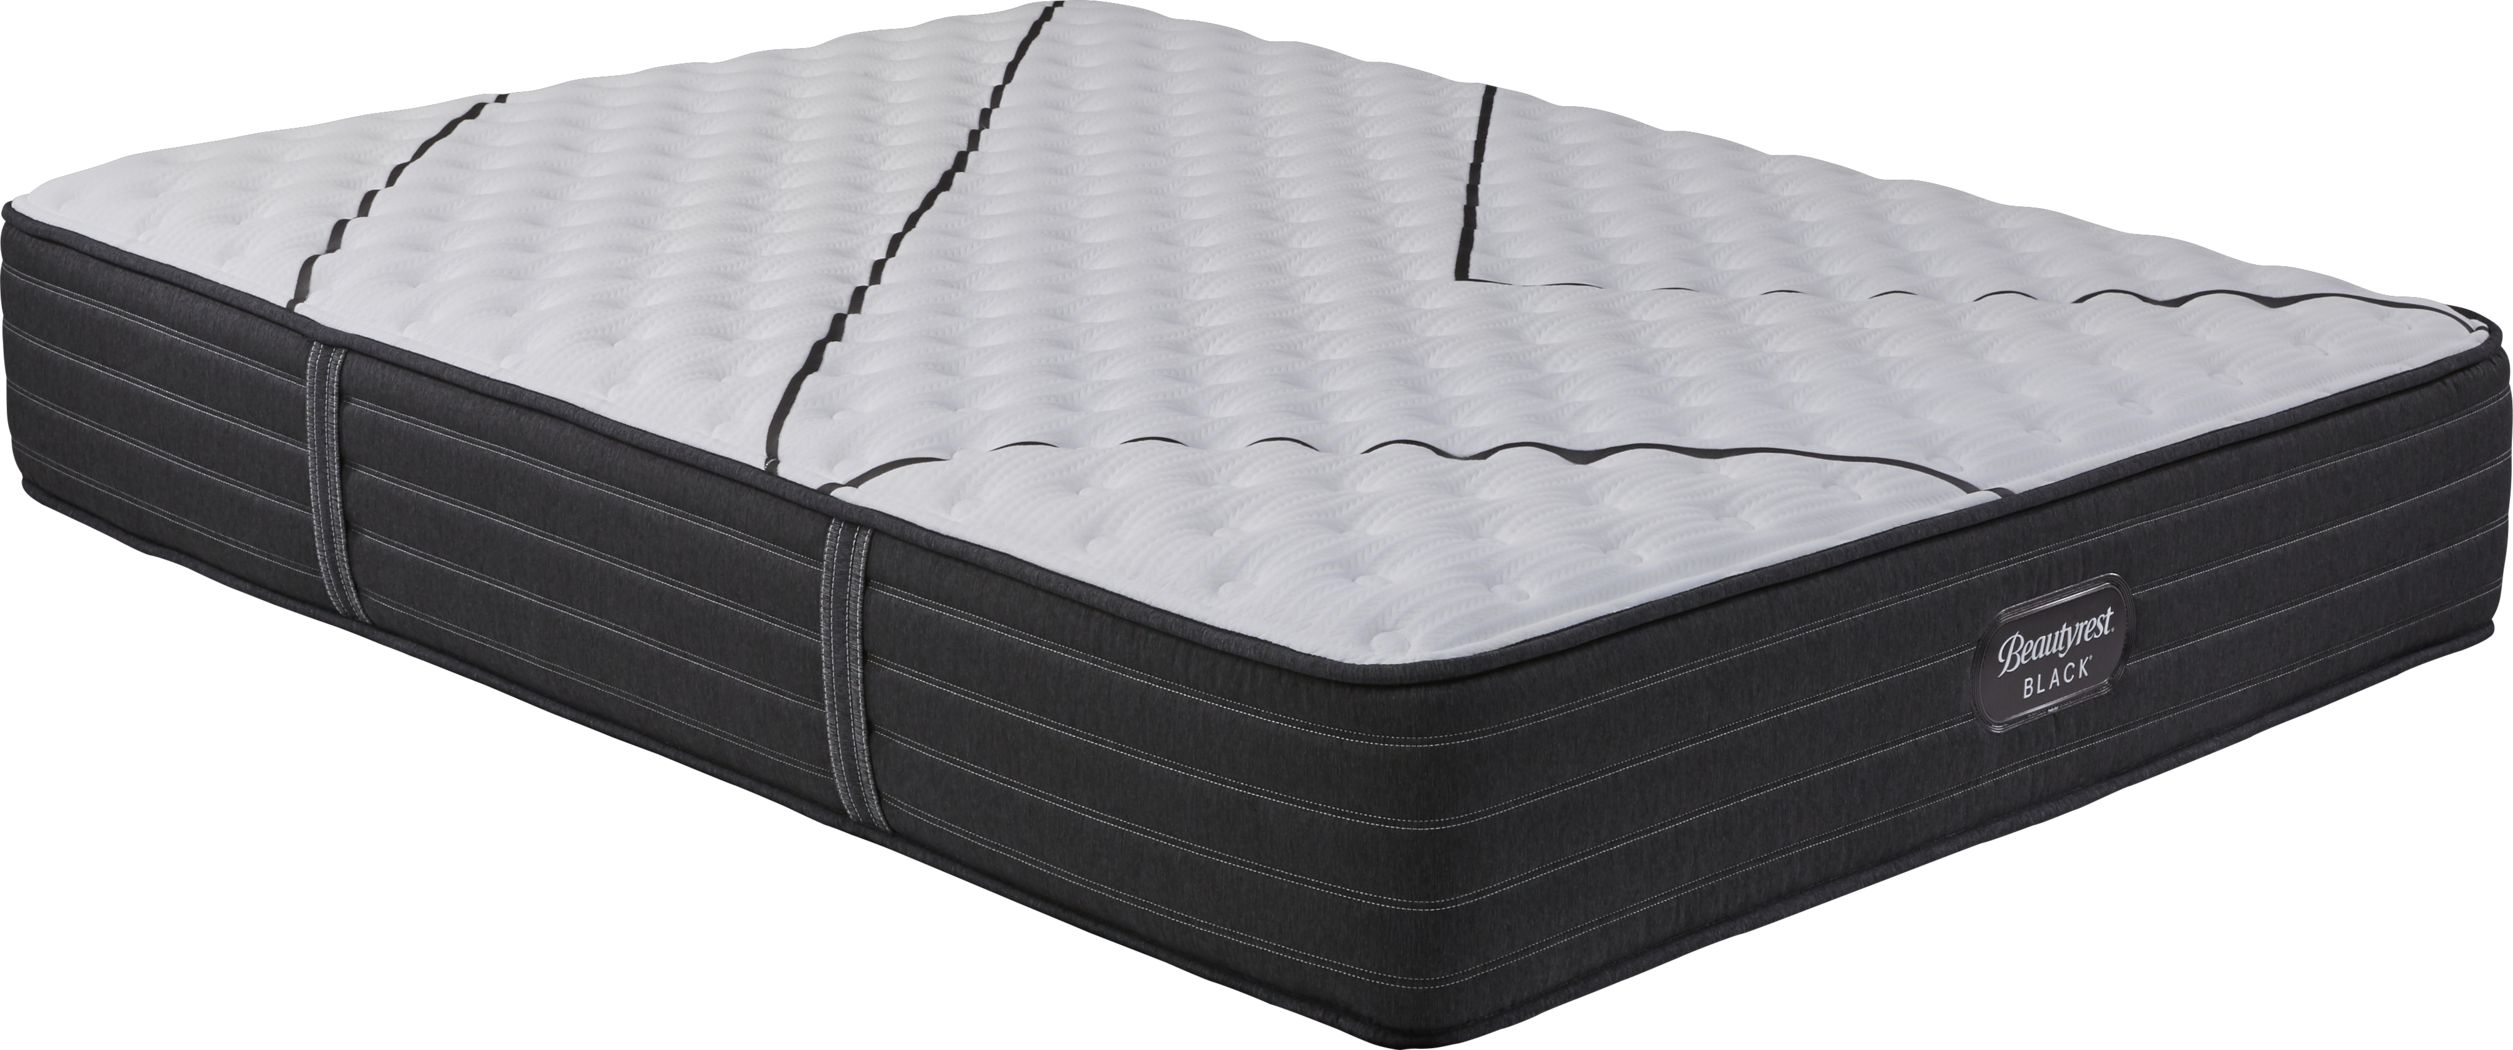 bjs firm queen mattress